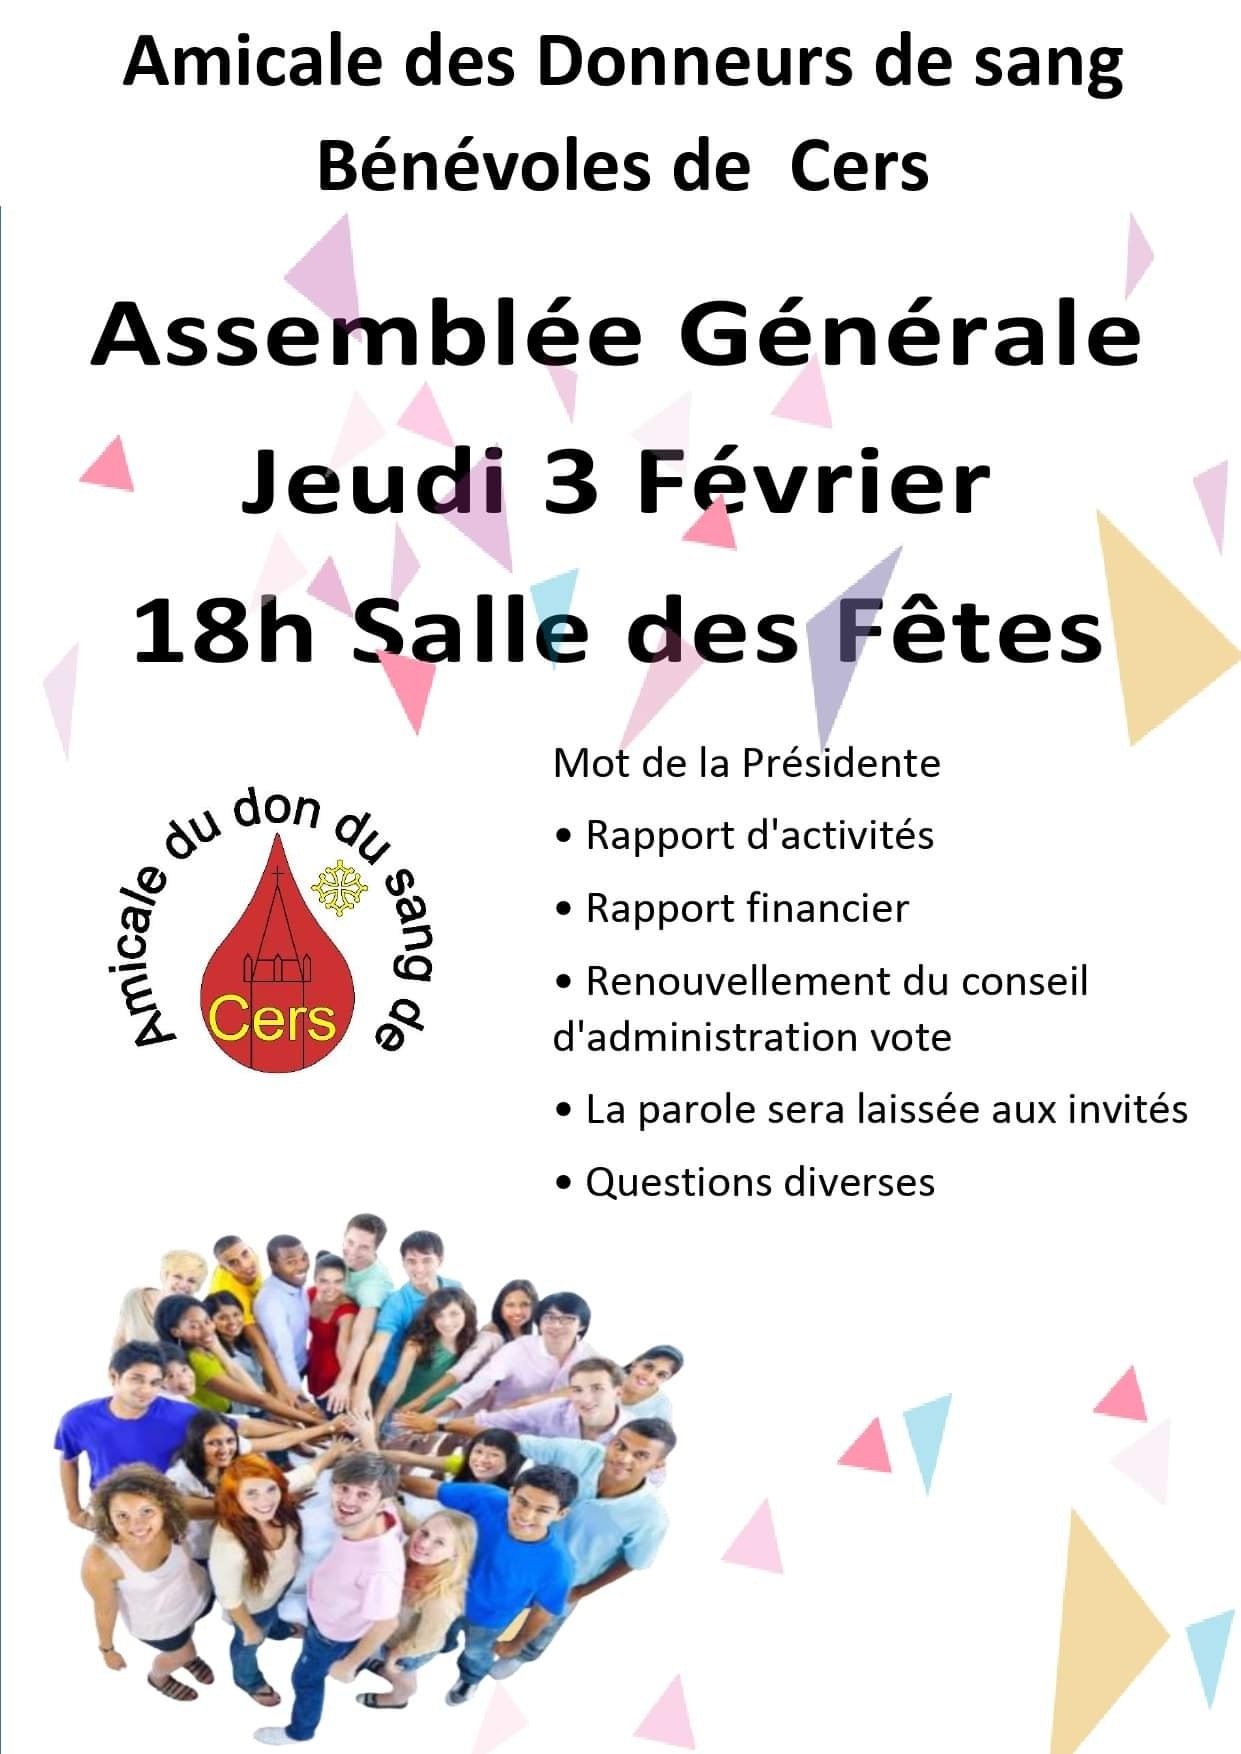 You are currently viewing Assemblée générale du Don du sang le 3 février